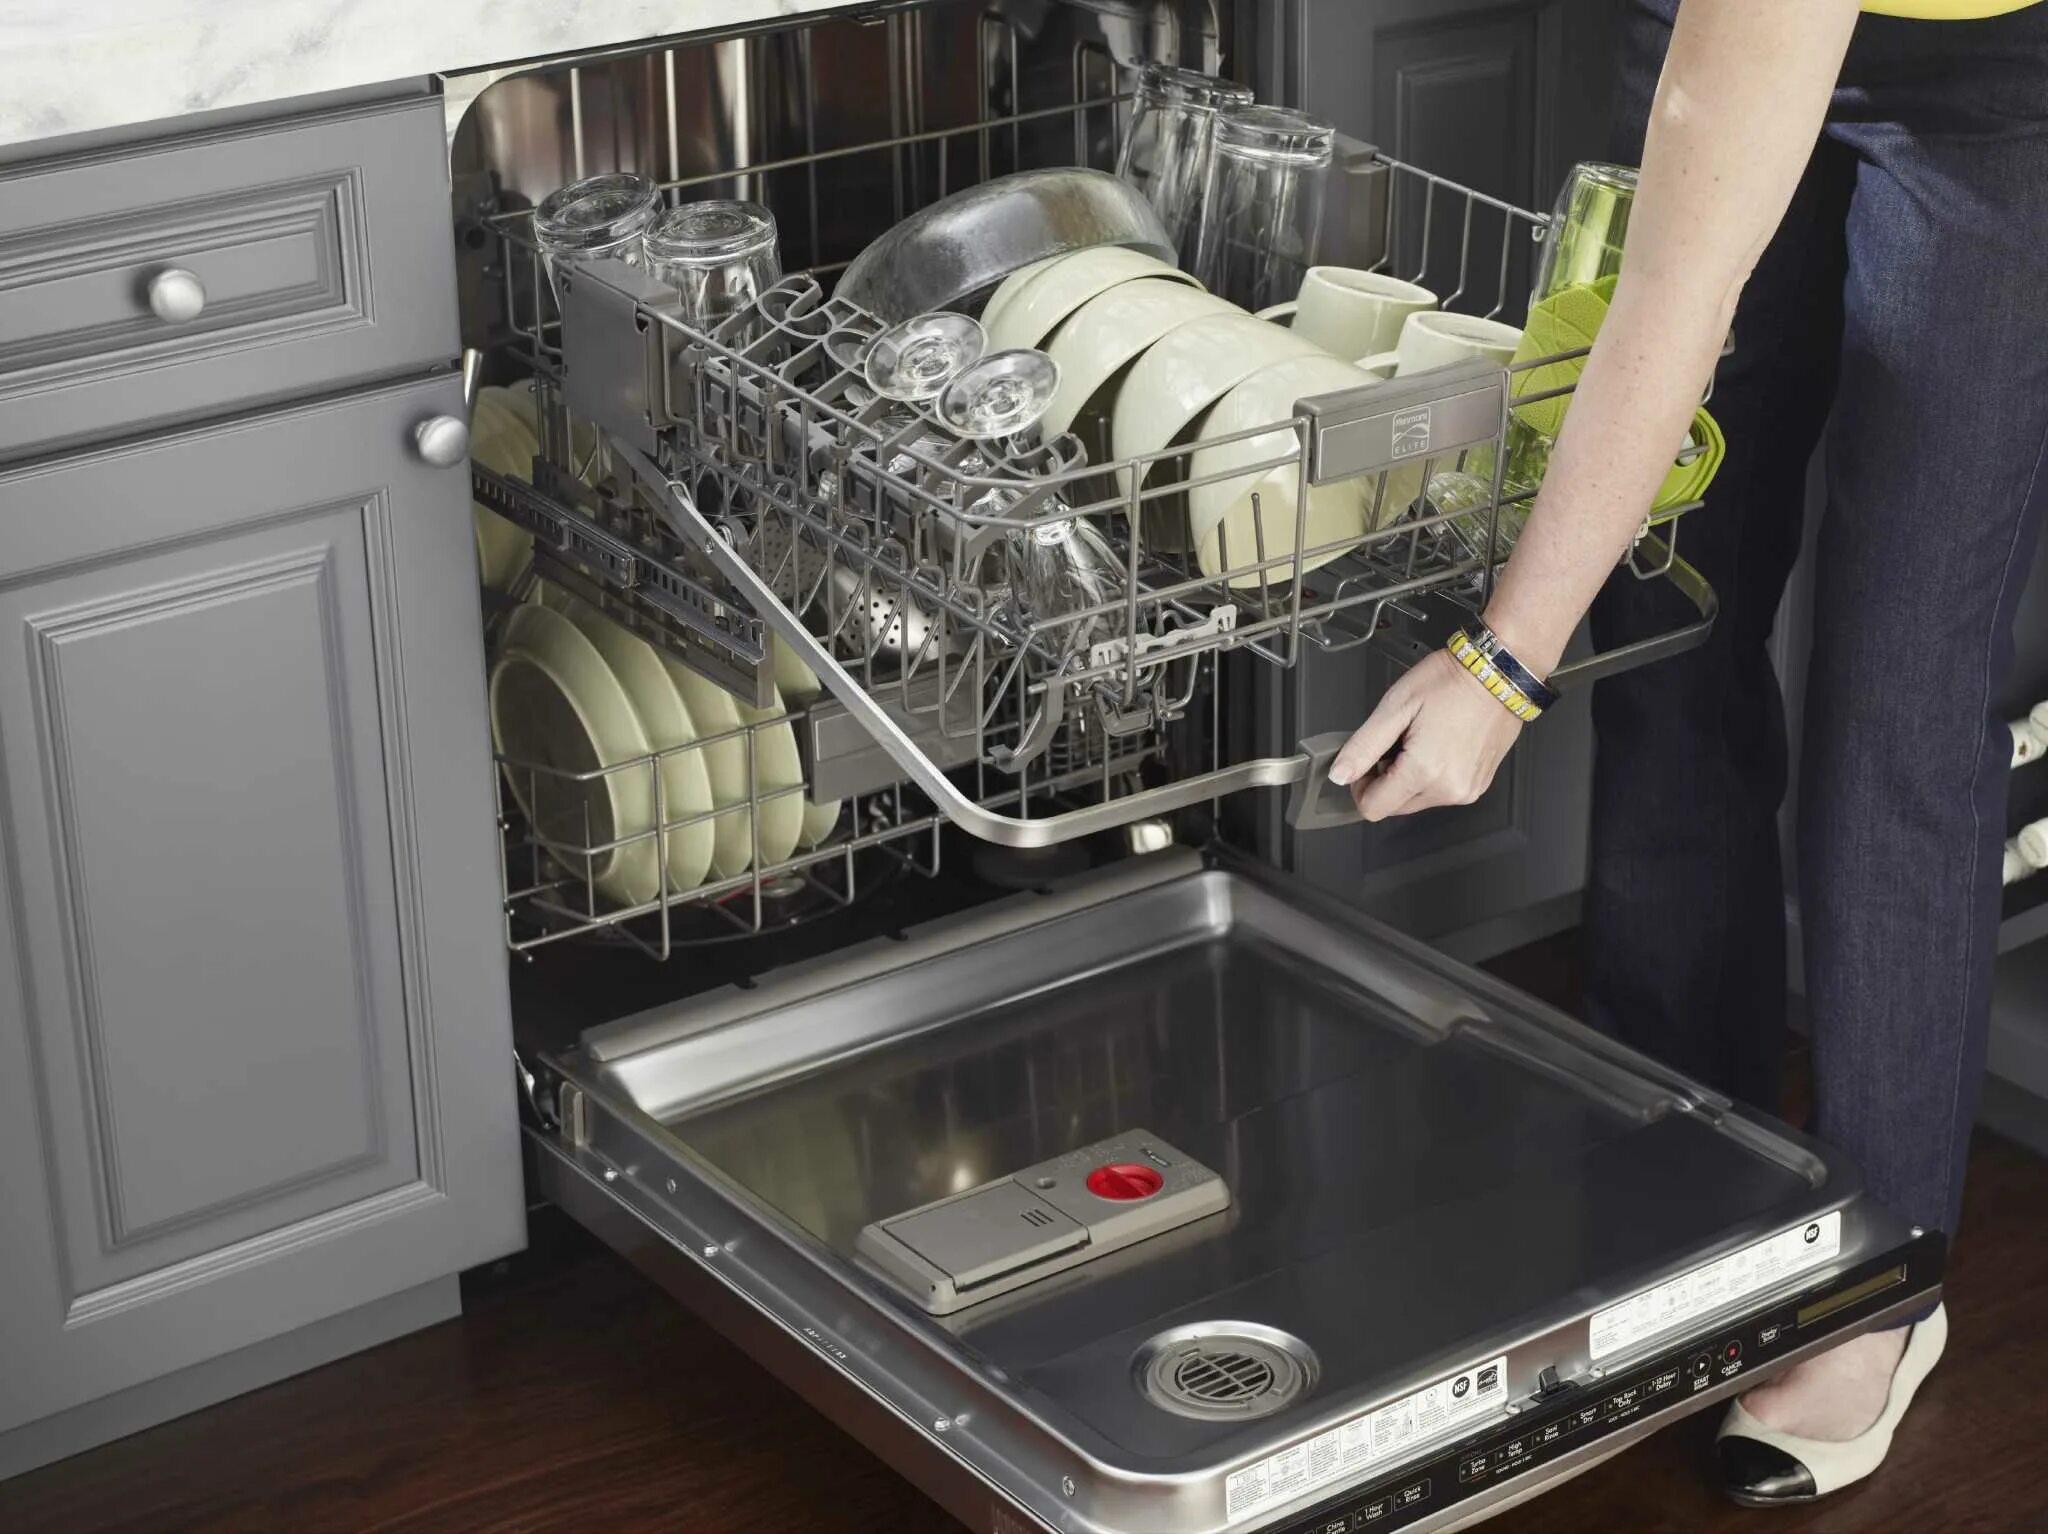 Питание посудомоечной машины машины. Посуда в посудомойке. Расстановка посуды в посудомоечной машине. Укладка посуды в посудомоечной машине. Загрузка посуды в посудомоечную машину.